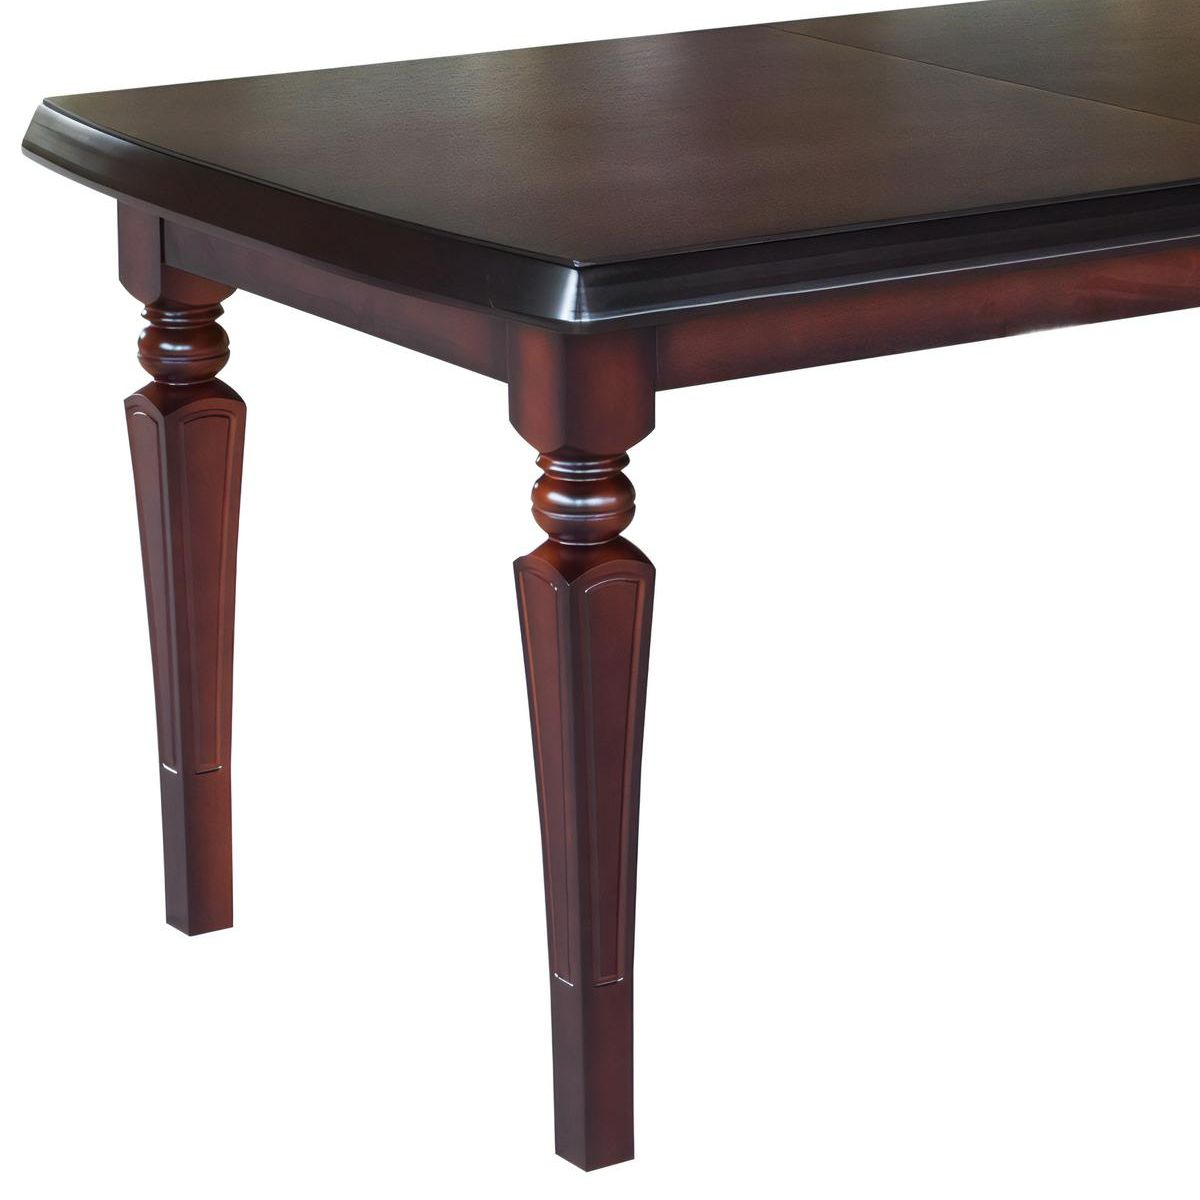 Wysokiej jakości drewno: Stół wykonany jest z solidnego drewna, co nadaje mu nie tylko elegancji, ale także trwałości.